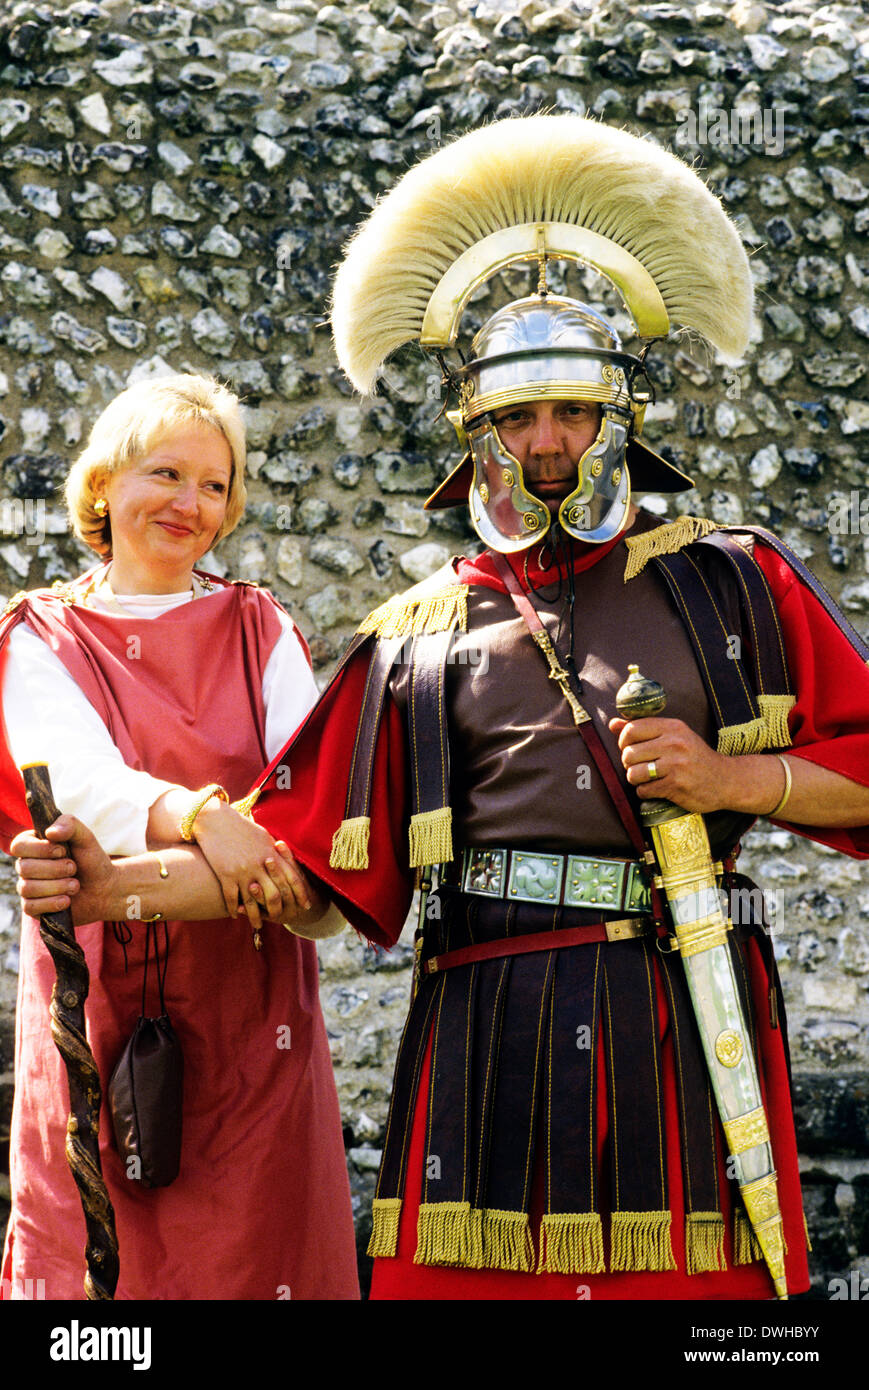 Rievocazione storica, il generale romano alto rango soldato dell'esercito di soldati e lady, II secolo Inghilterra REGNO UNITO Foto Stock